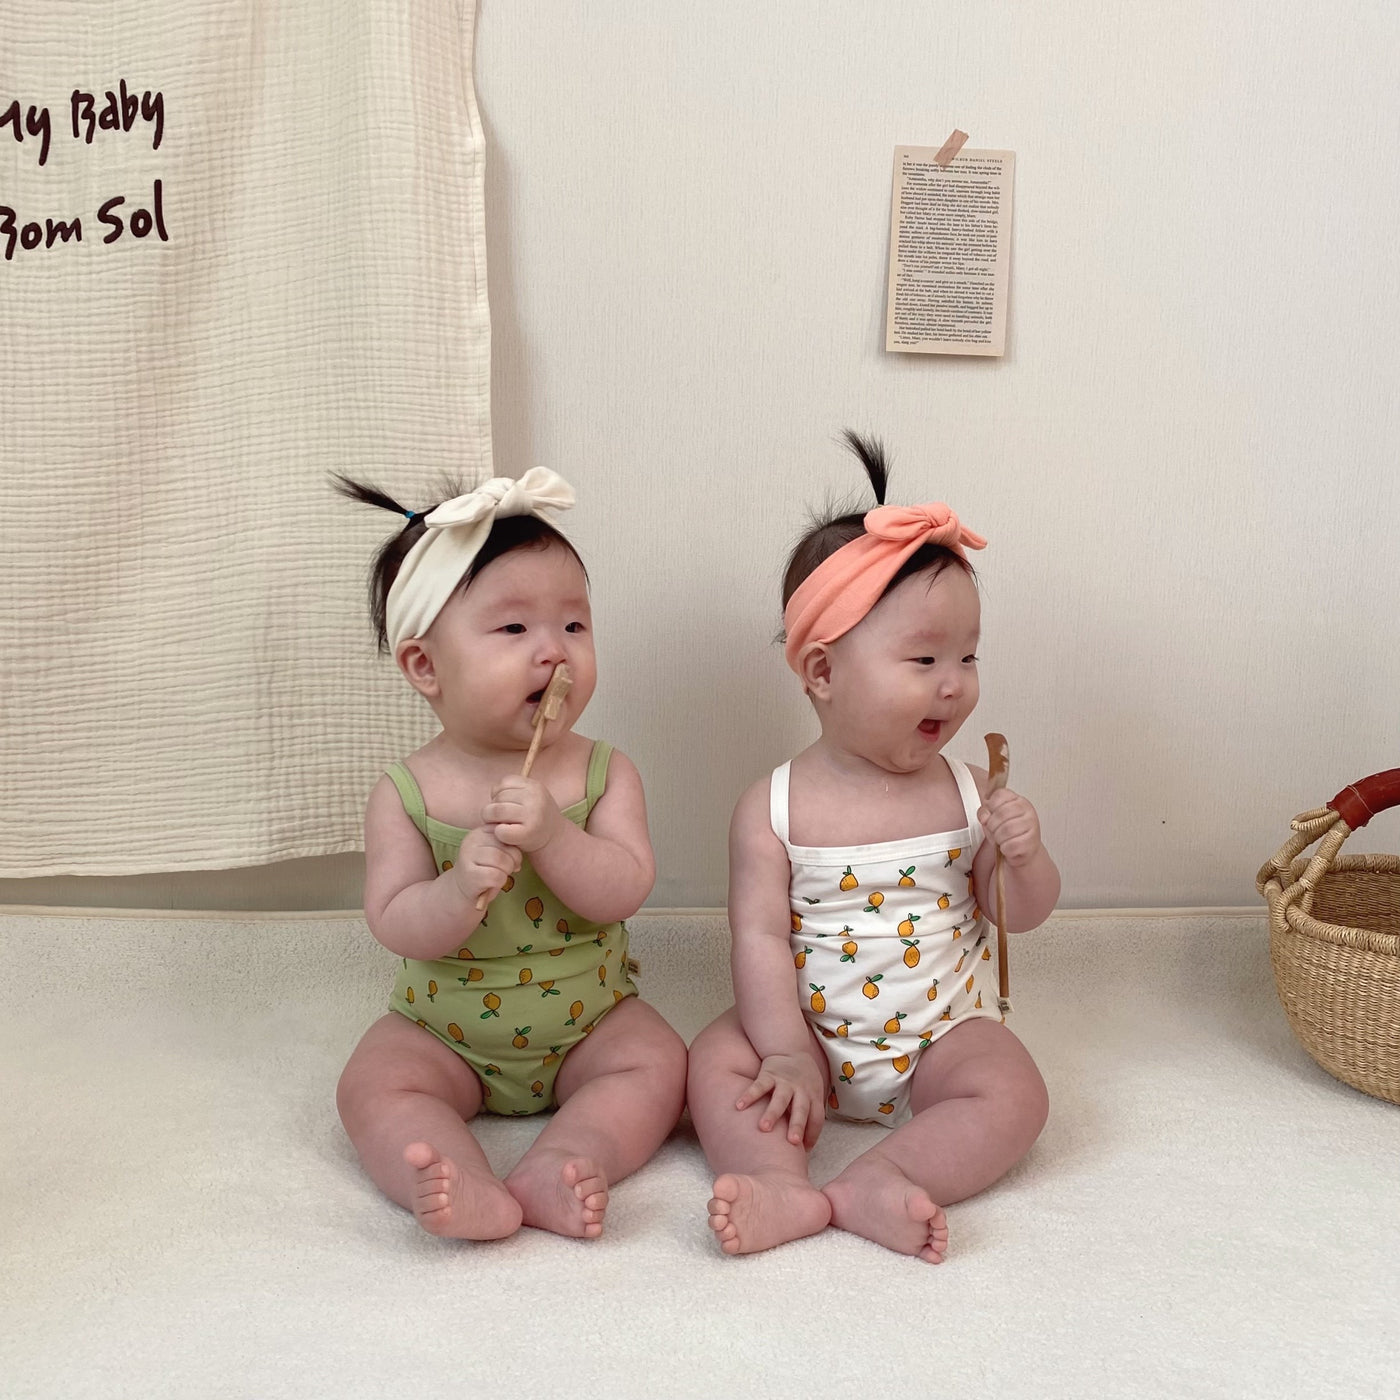 Babies wearing onesie in lemon prints